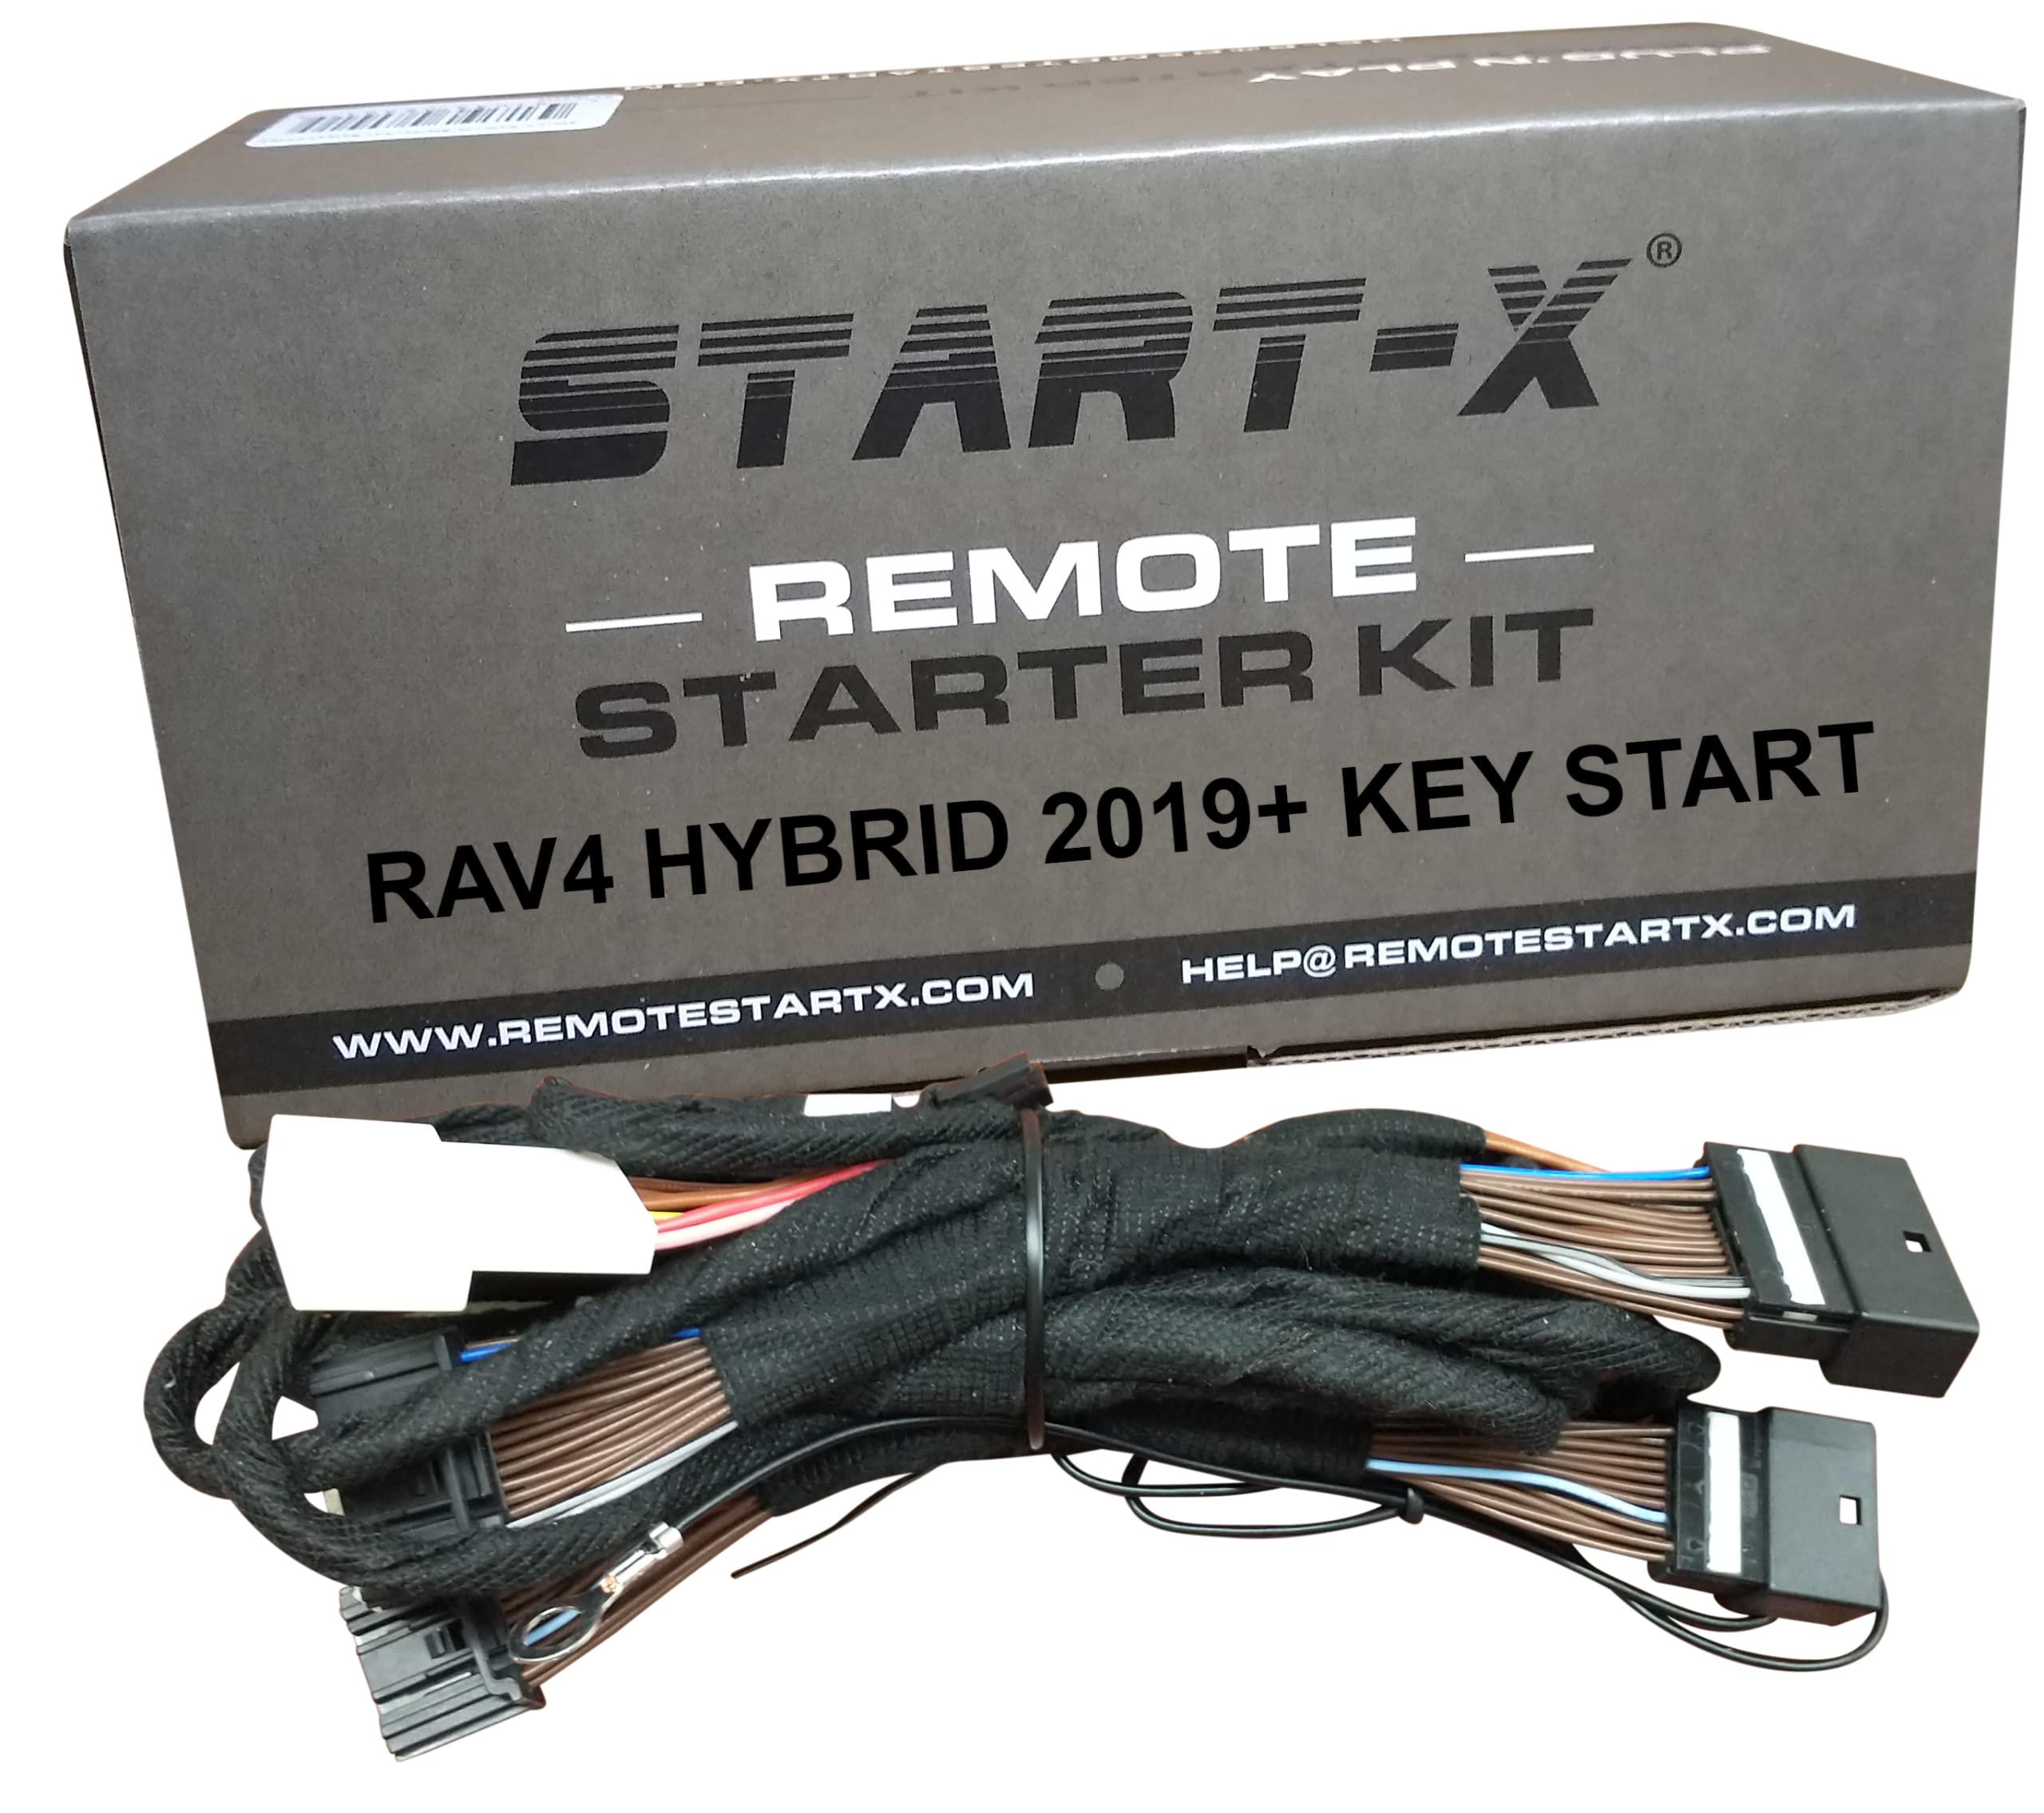 start-x remote starter